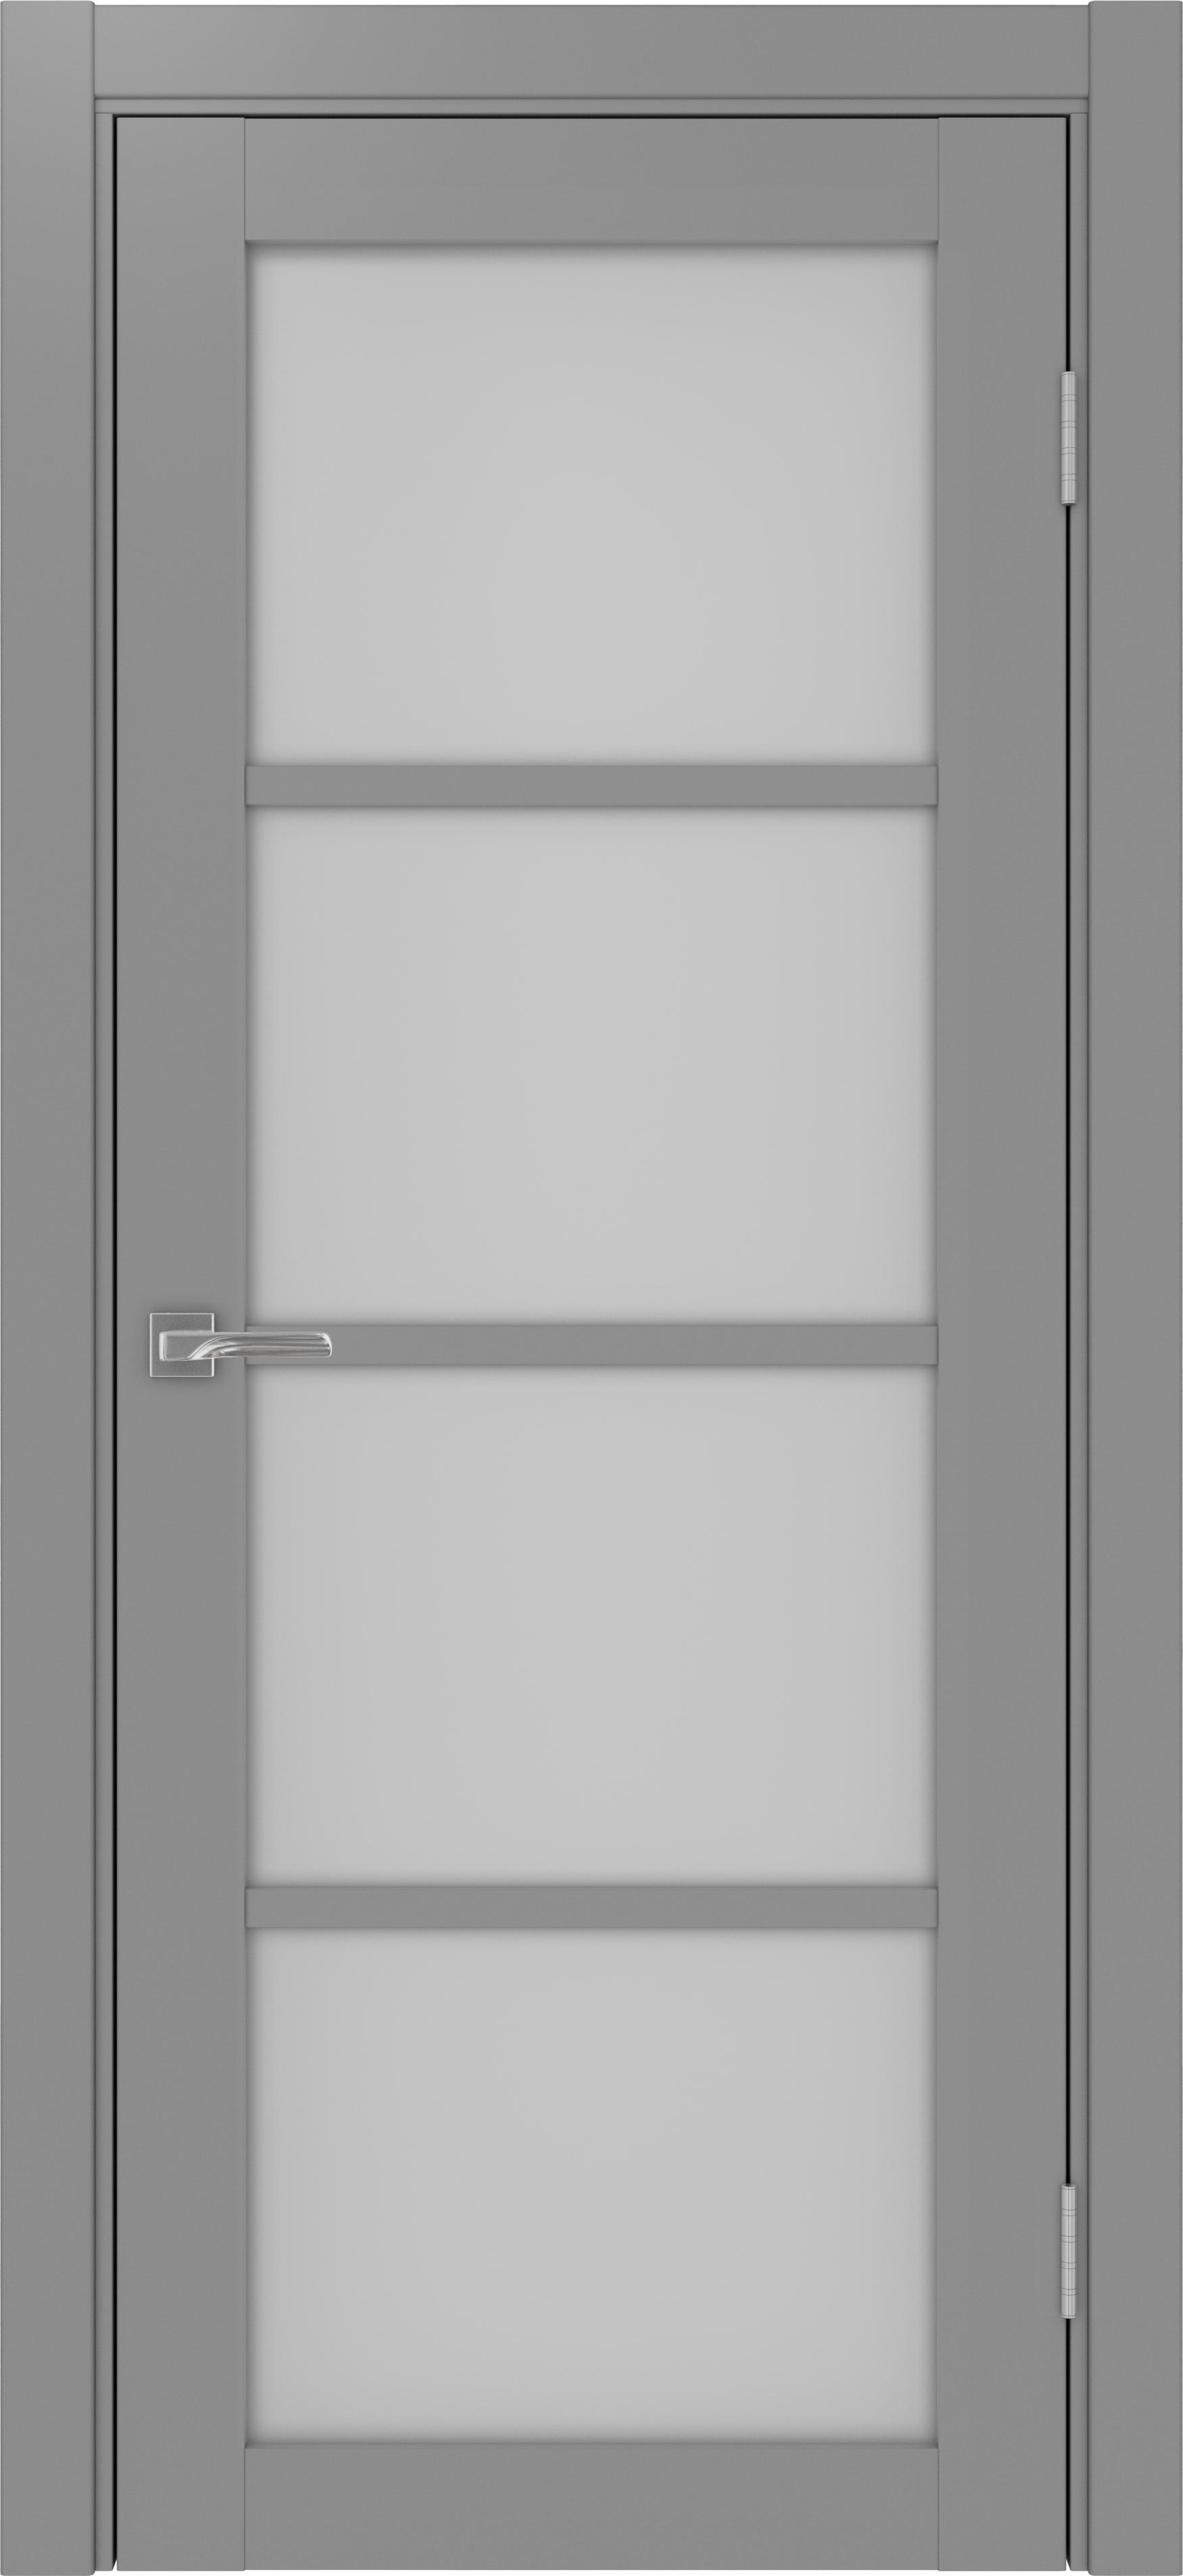 Межкомнатная дверь «Турин 540.2222 Серый» стекло сатин